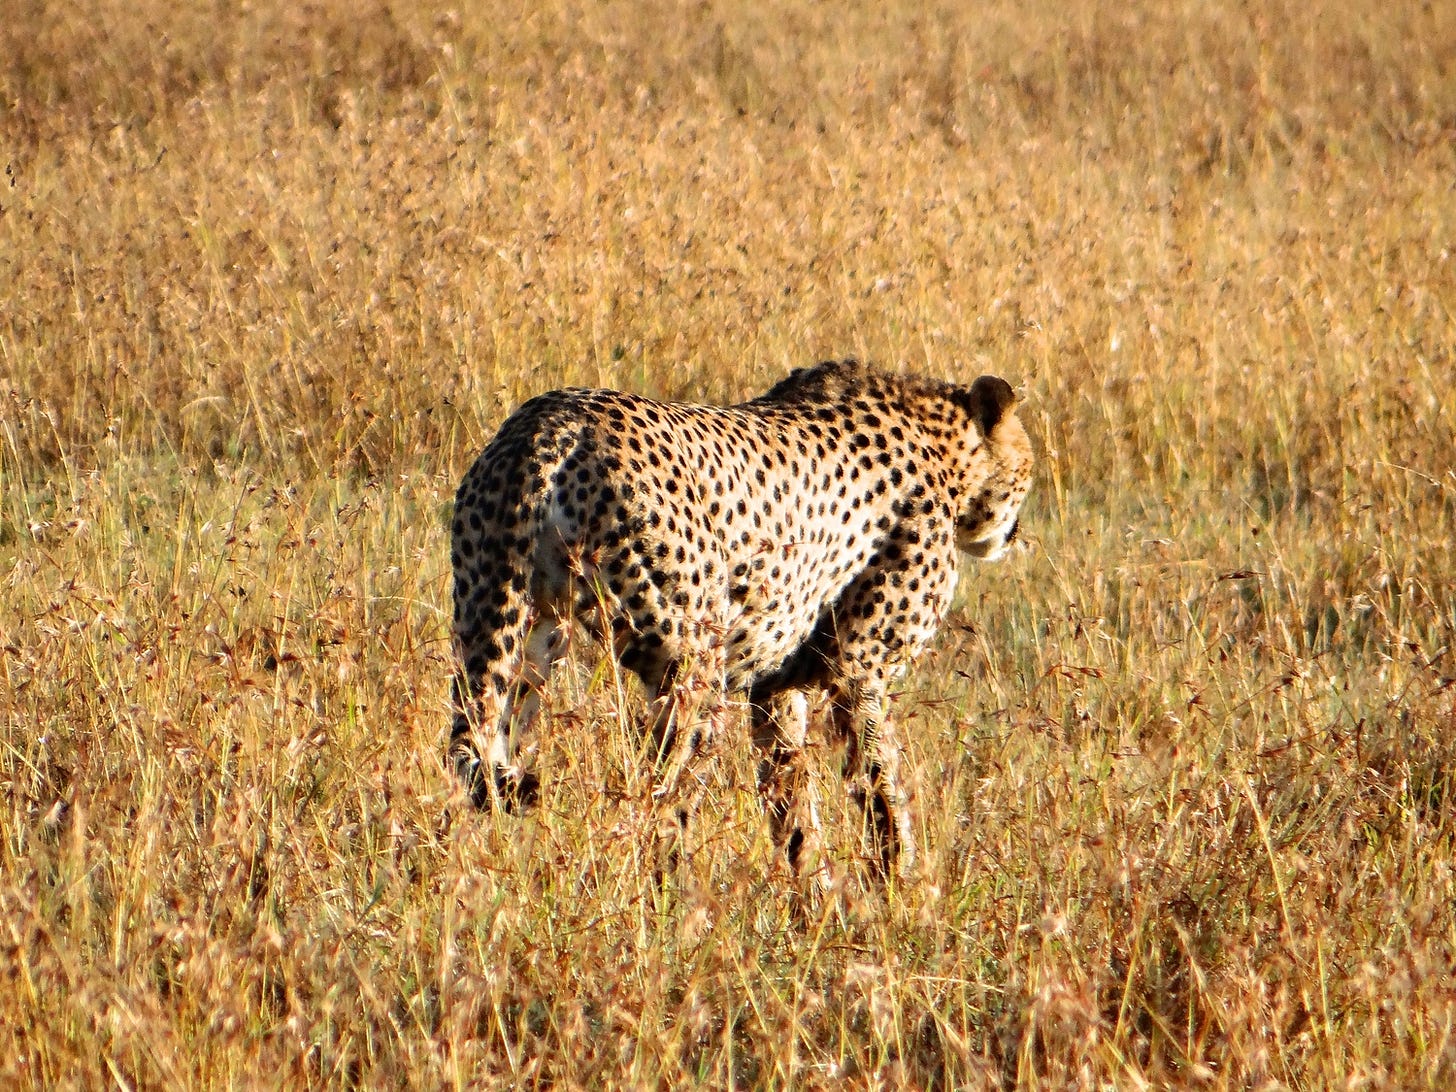 Cheetah 'timing' an impala